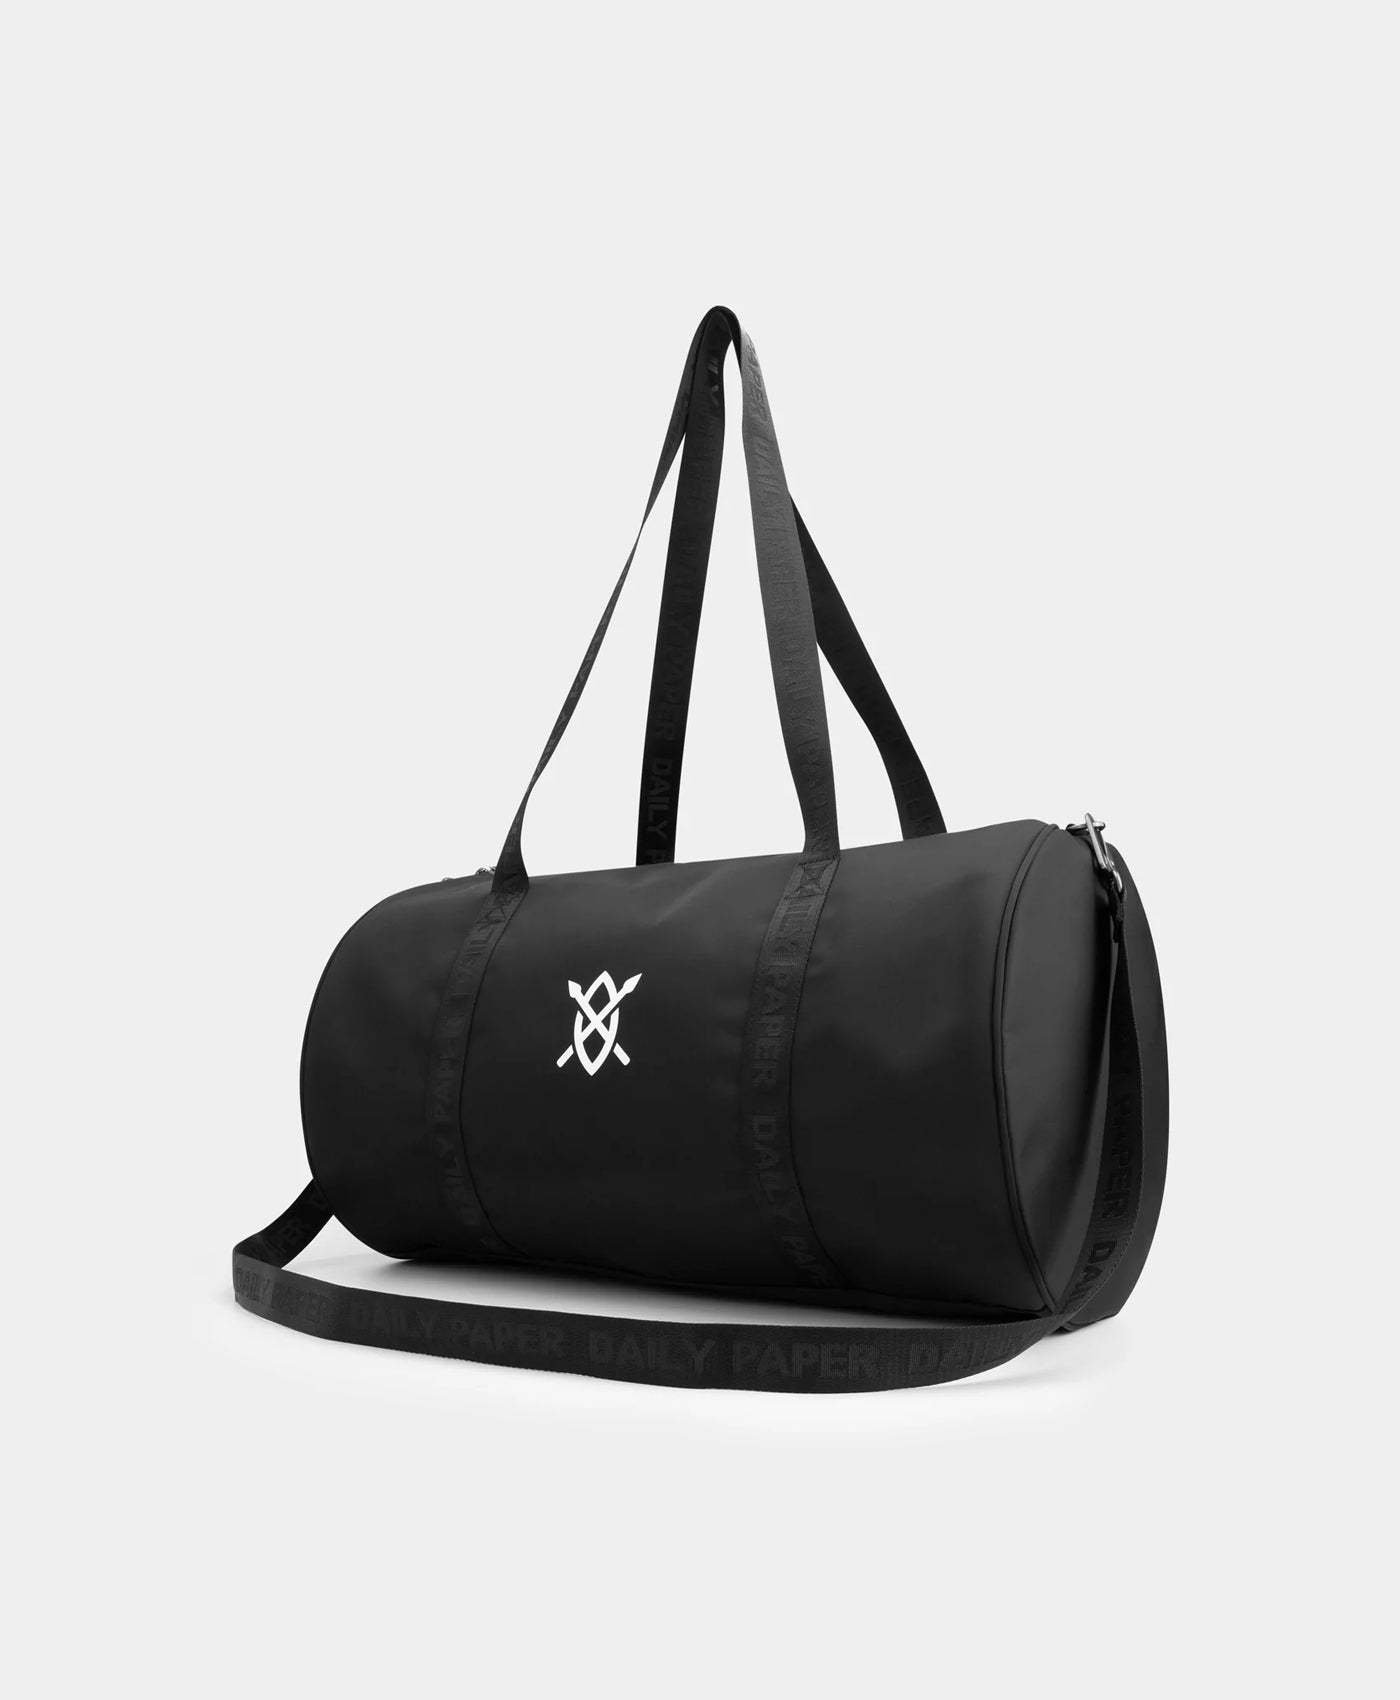 DP - Black Eduffel Bag - Packshot - Rear